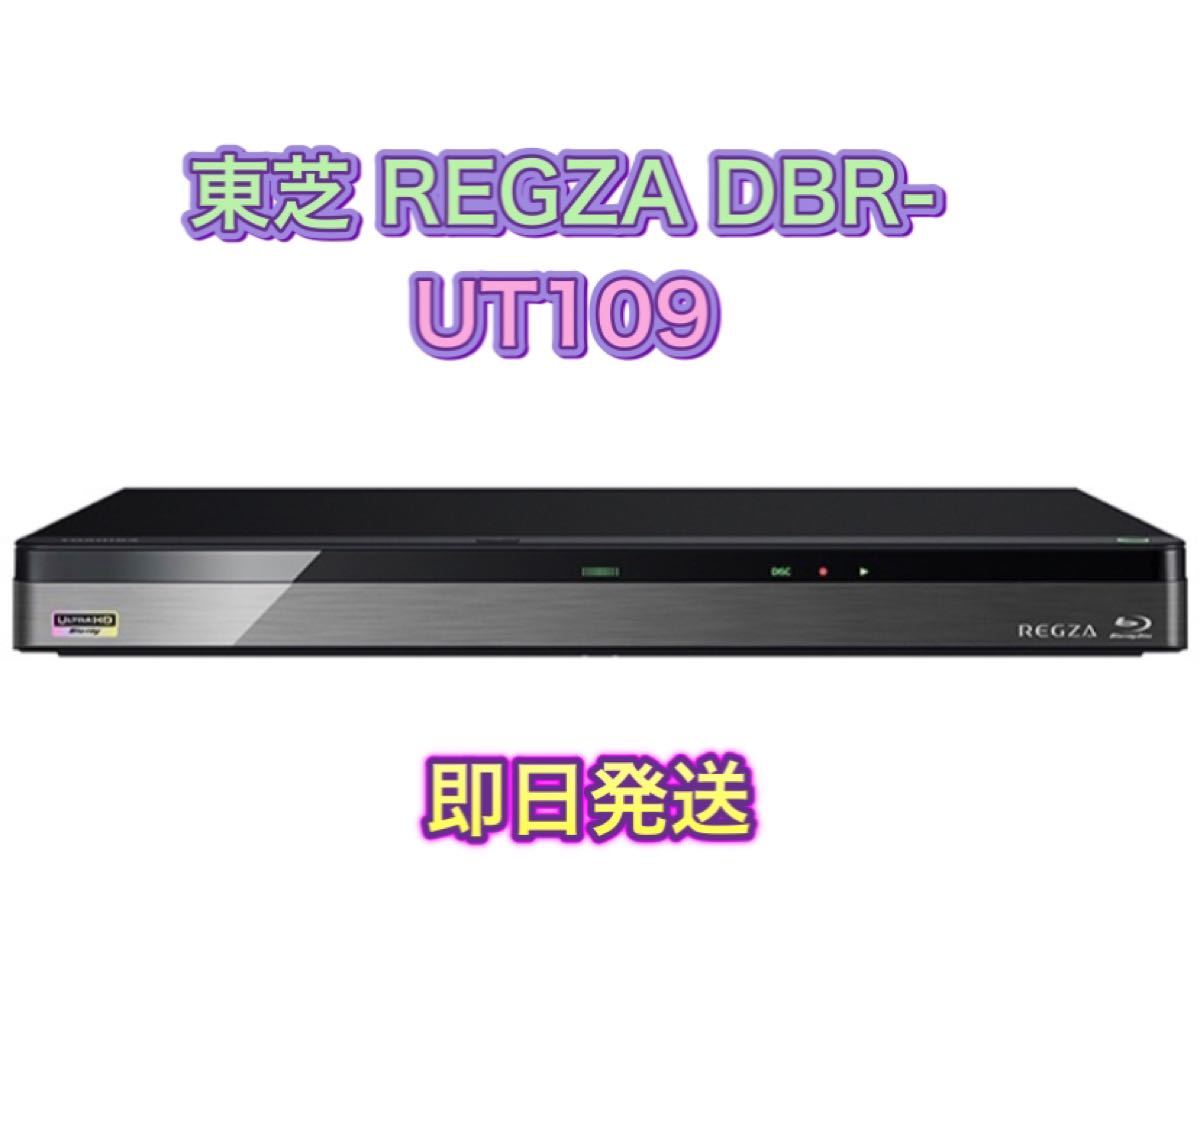 売れ筋】 東芝 1TB HDD 3チューナー搭載 ブルーレイレコーダー Ultra HD DBR-UTシリーズ レグザブルーレイ DBR-UT109  テレビ